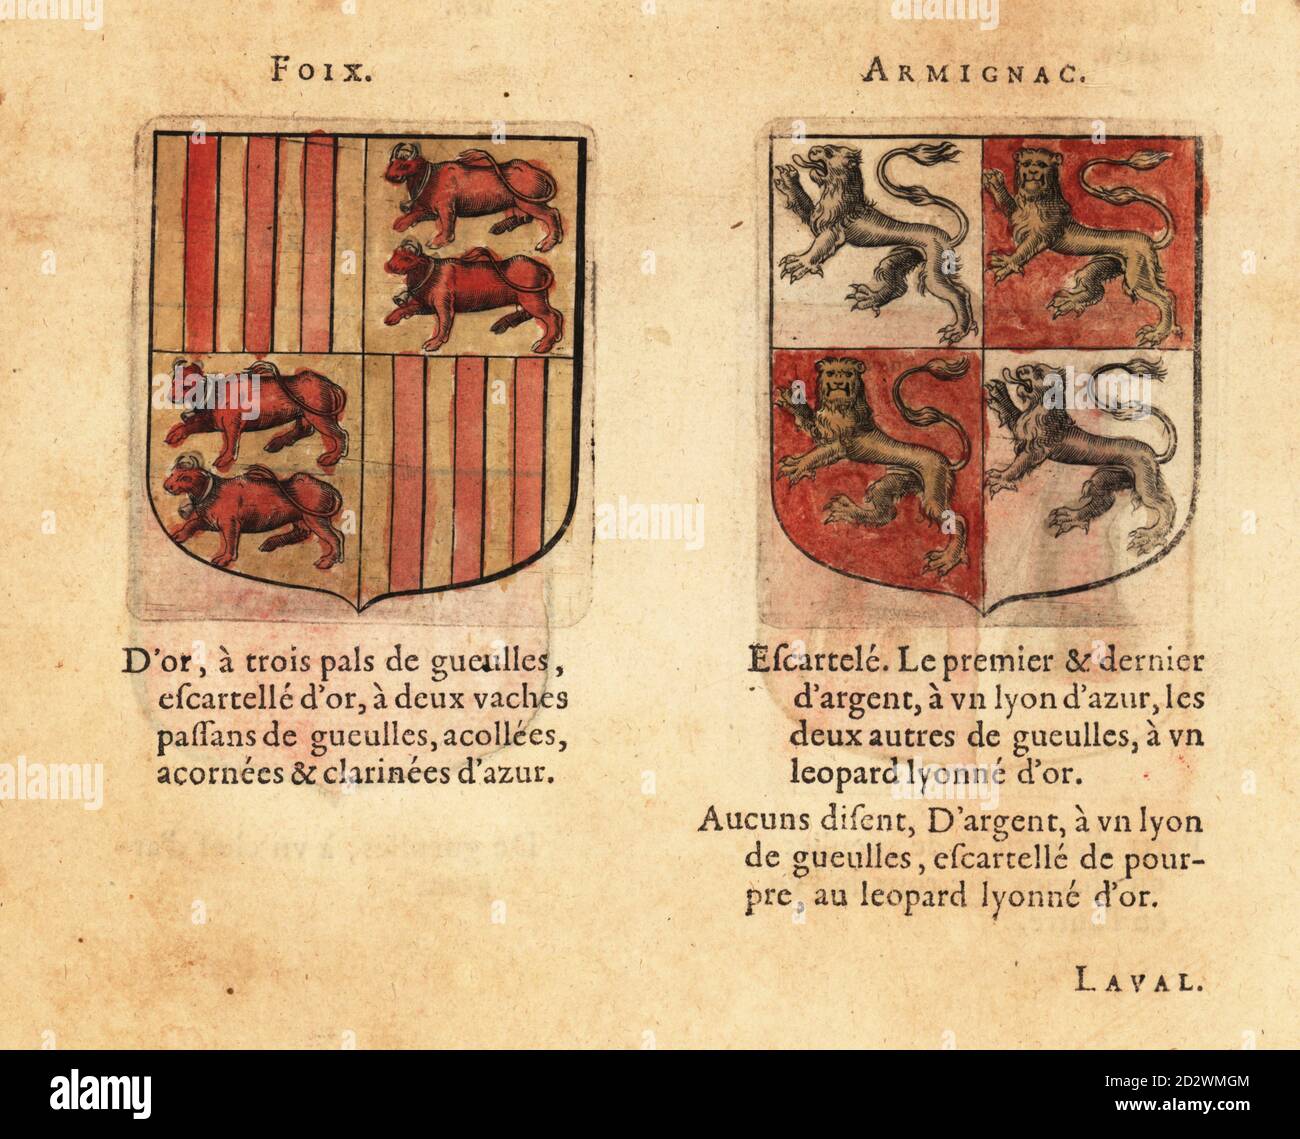 Armoiries du Comte de Foix, trimestrielles avec trois pales rouges et deux taureaux rouges sur le champ d'or, et le Comte d'Armagnac, trimestriellement, avec des lions bleus et des lions de léopards d'or. Comtez : Foix, Arpignac. Gravure de blocs de bois de couleur main de Hierosme de Bara’s le Blason des Armoiries, chez Rolet Bouton, Paris, 1628 Banque D'Images